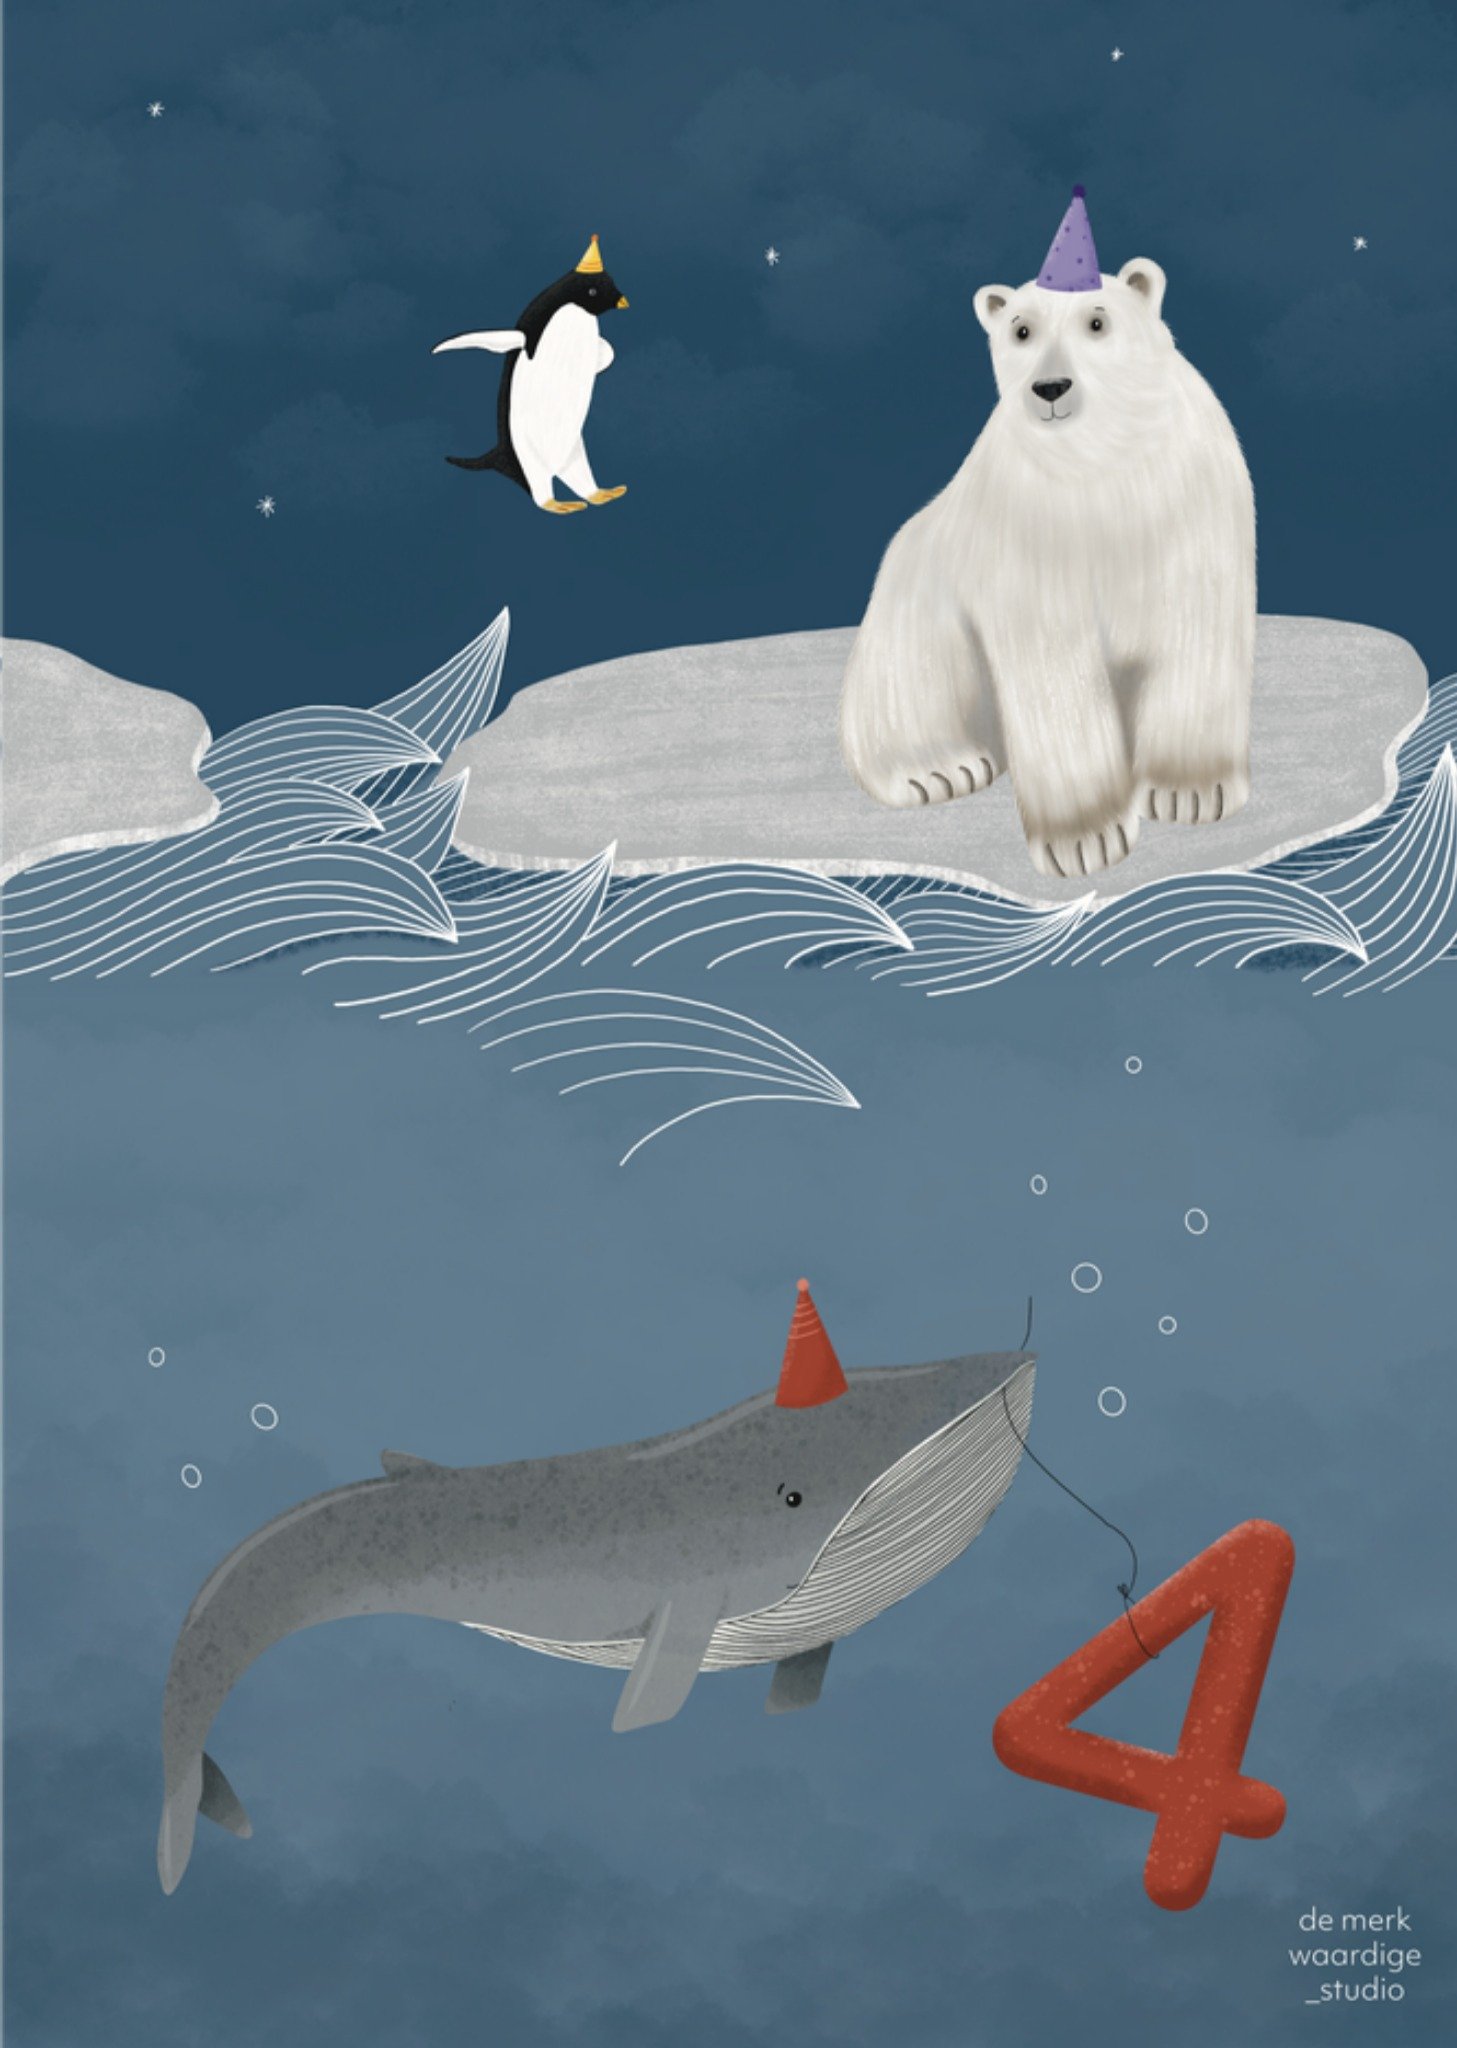 De Merkwaardige Studio - Verjaardagskaart - Met leeftijd - 4 - Arctische dieren